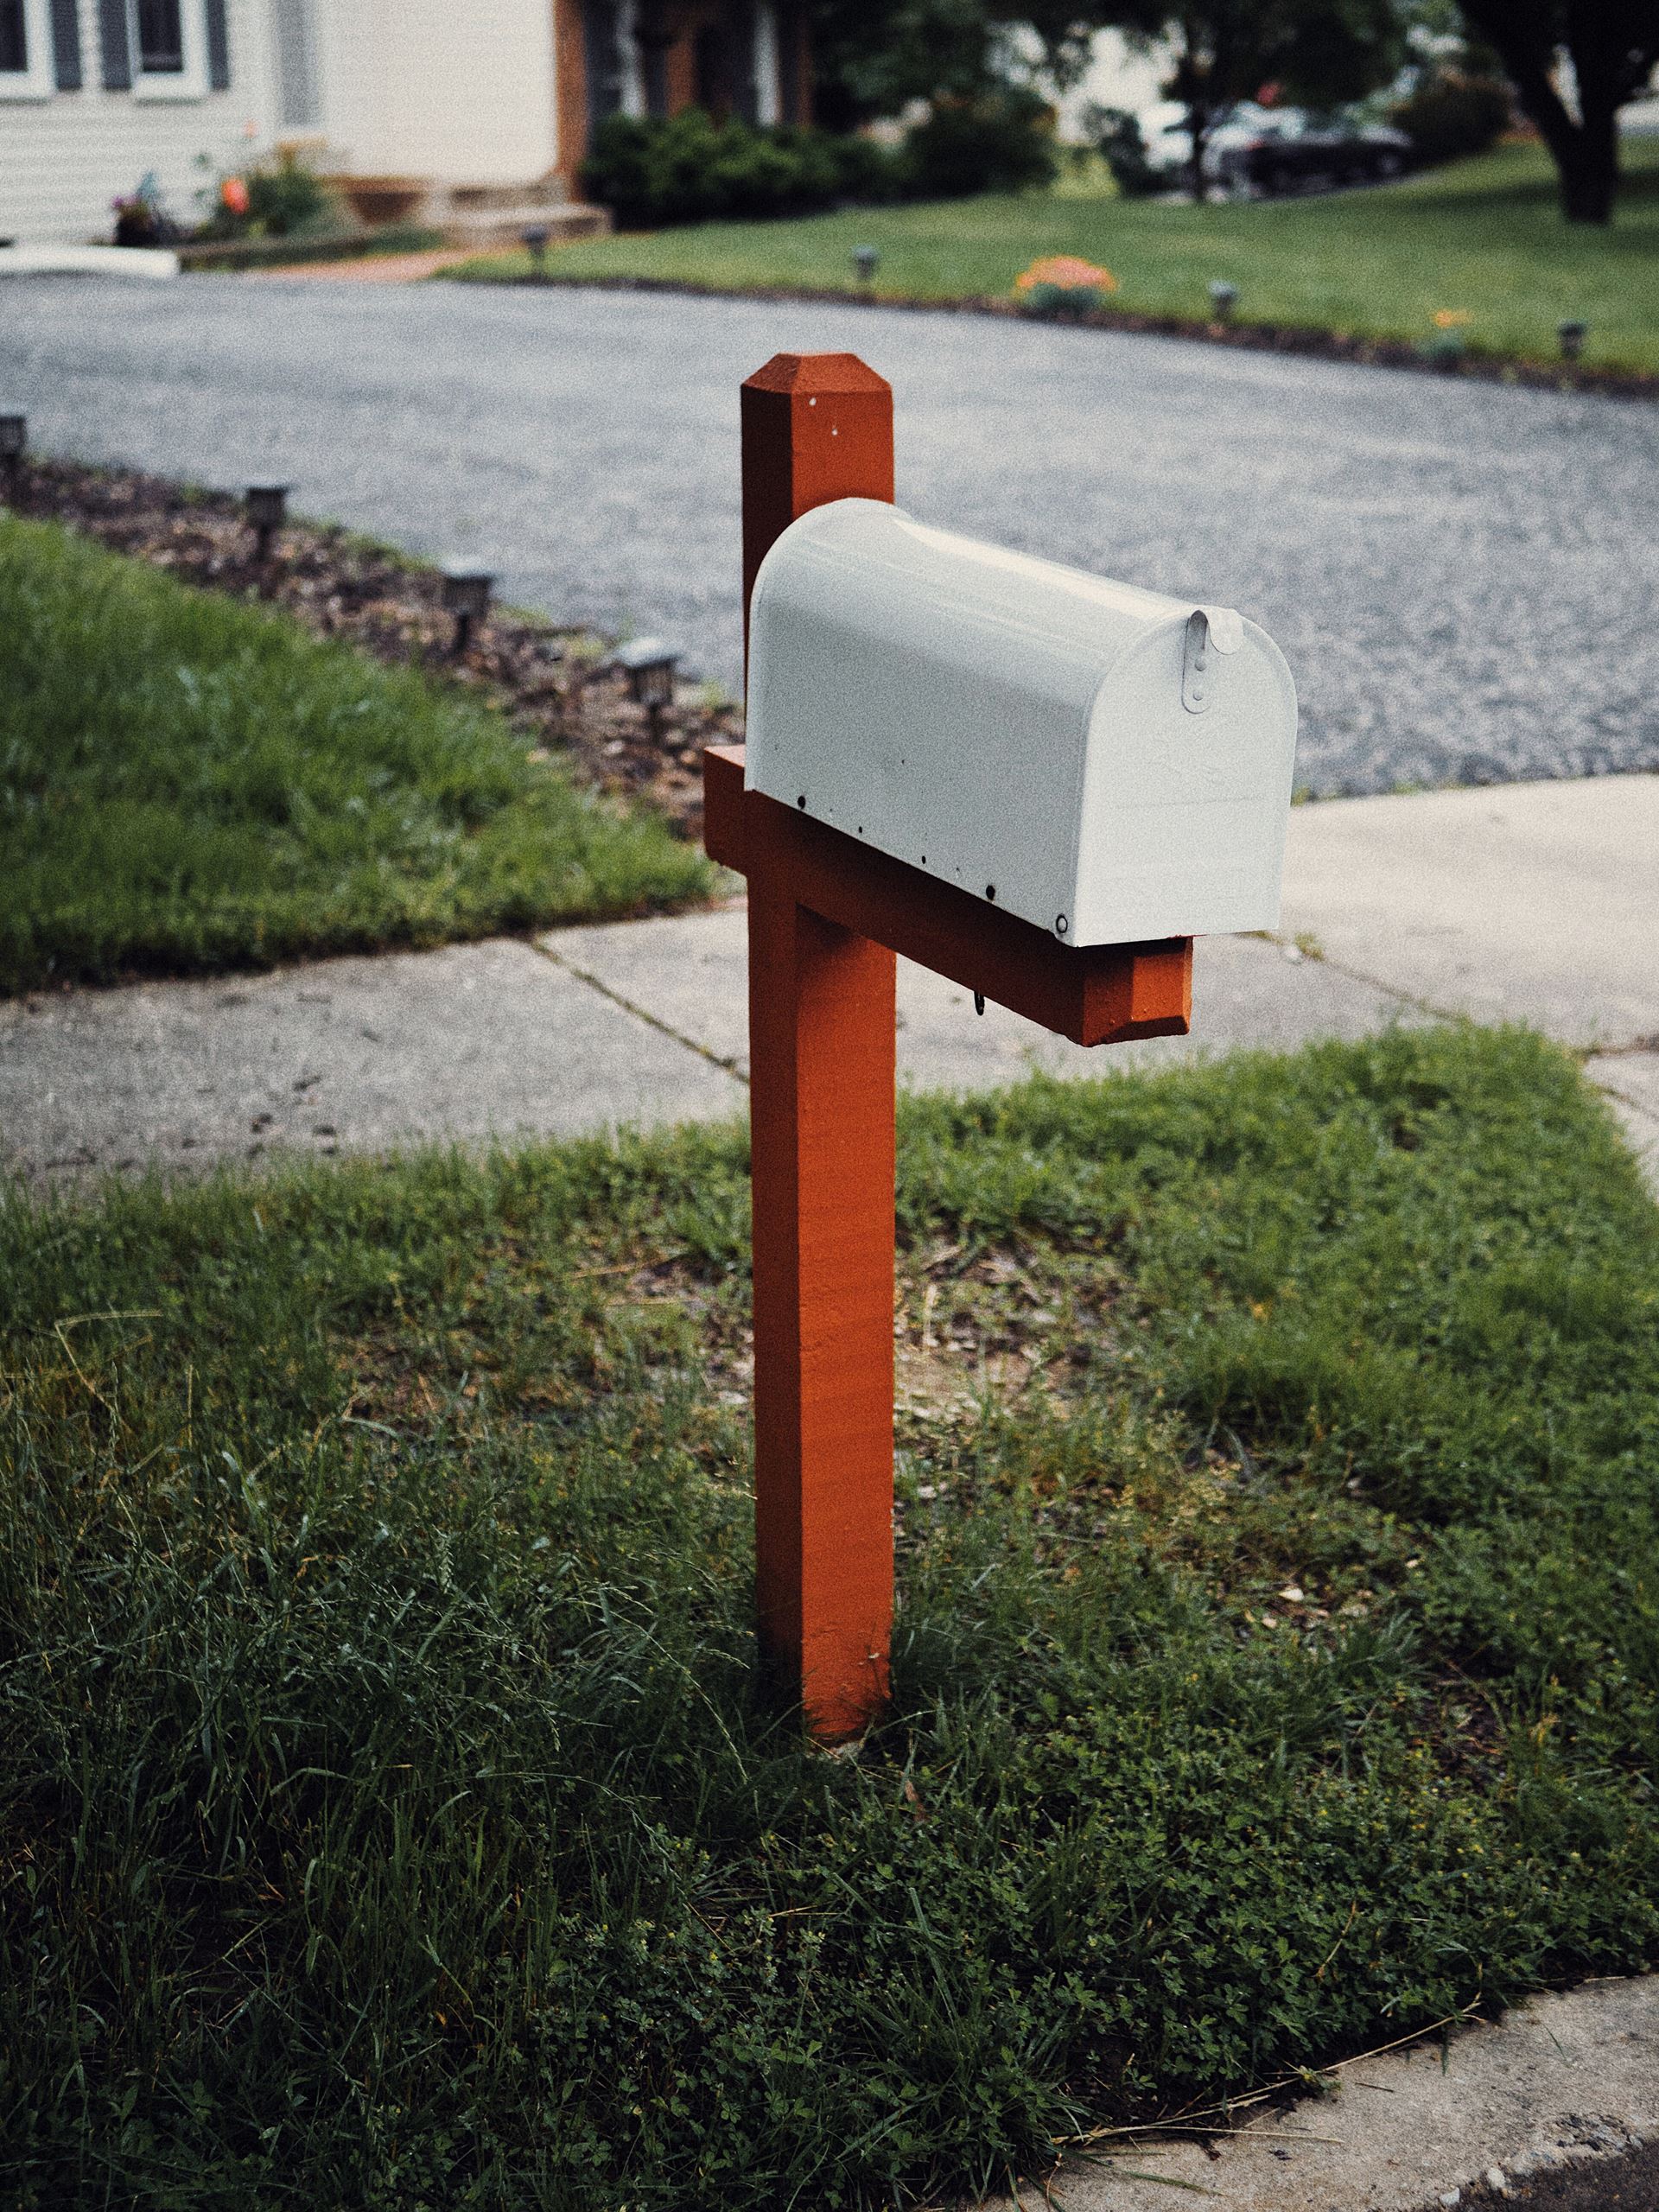 Mail box in a garden